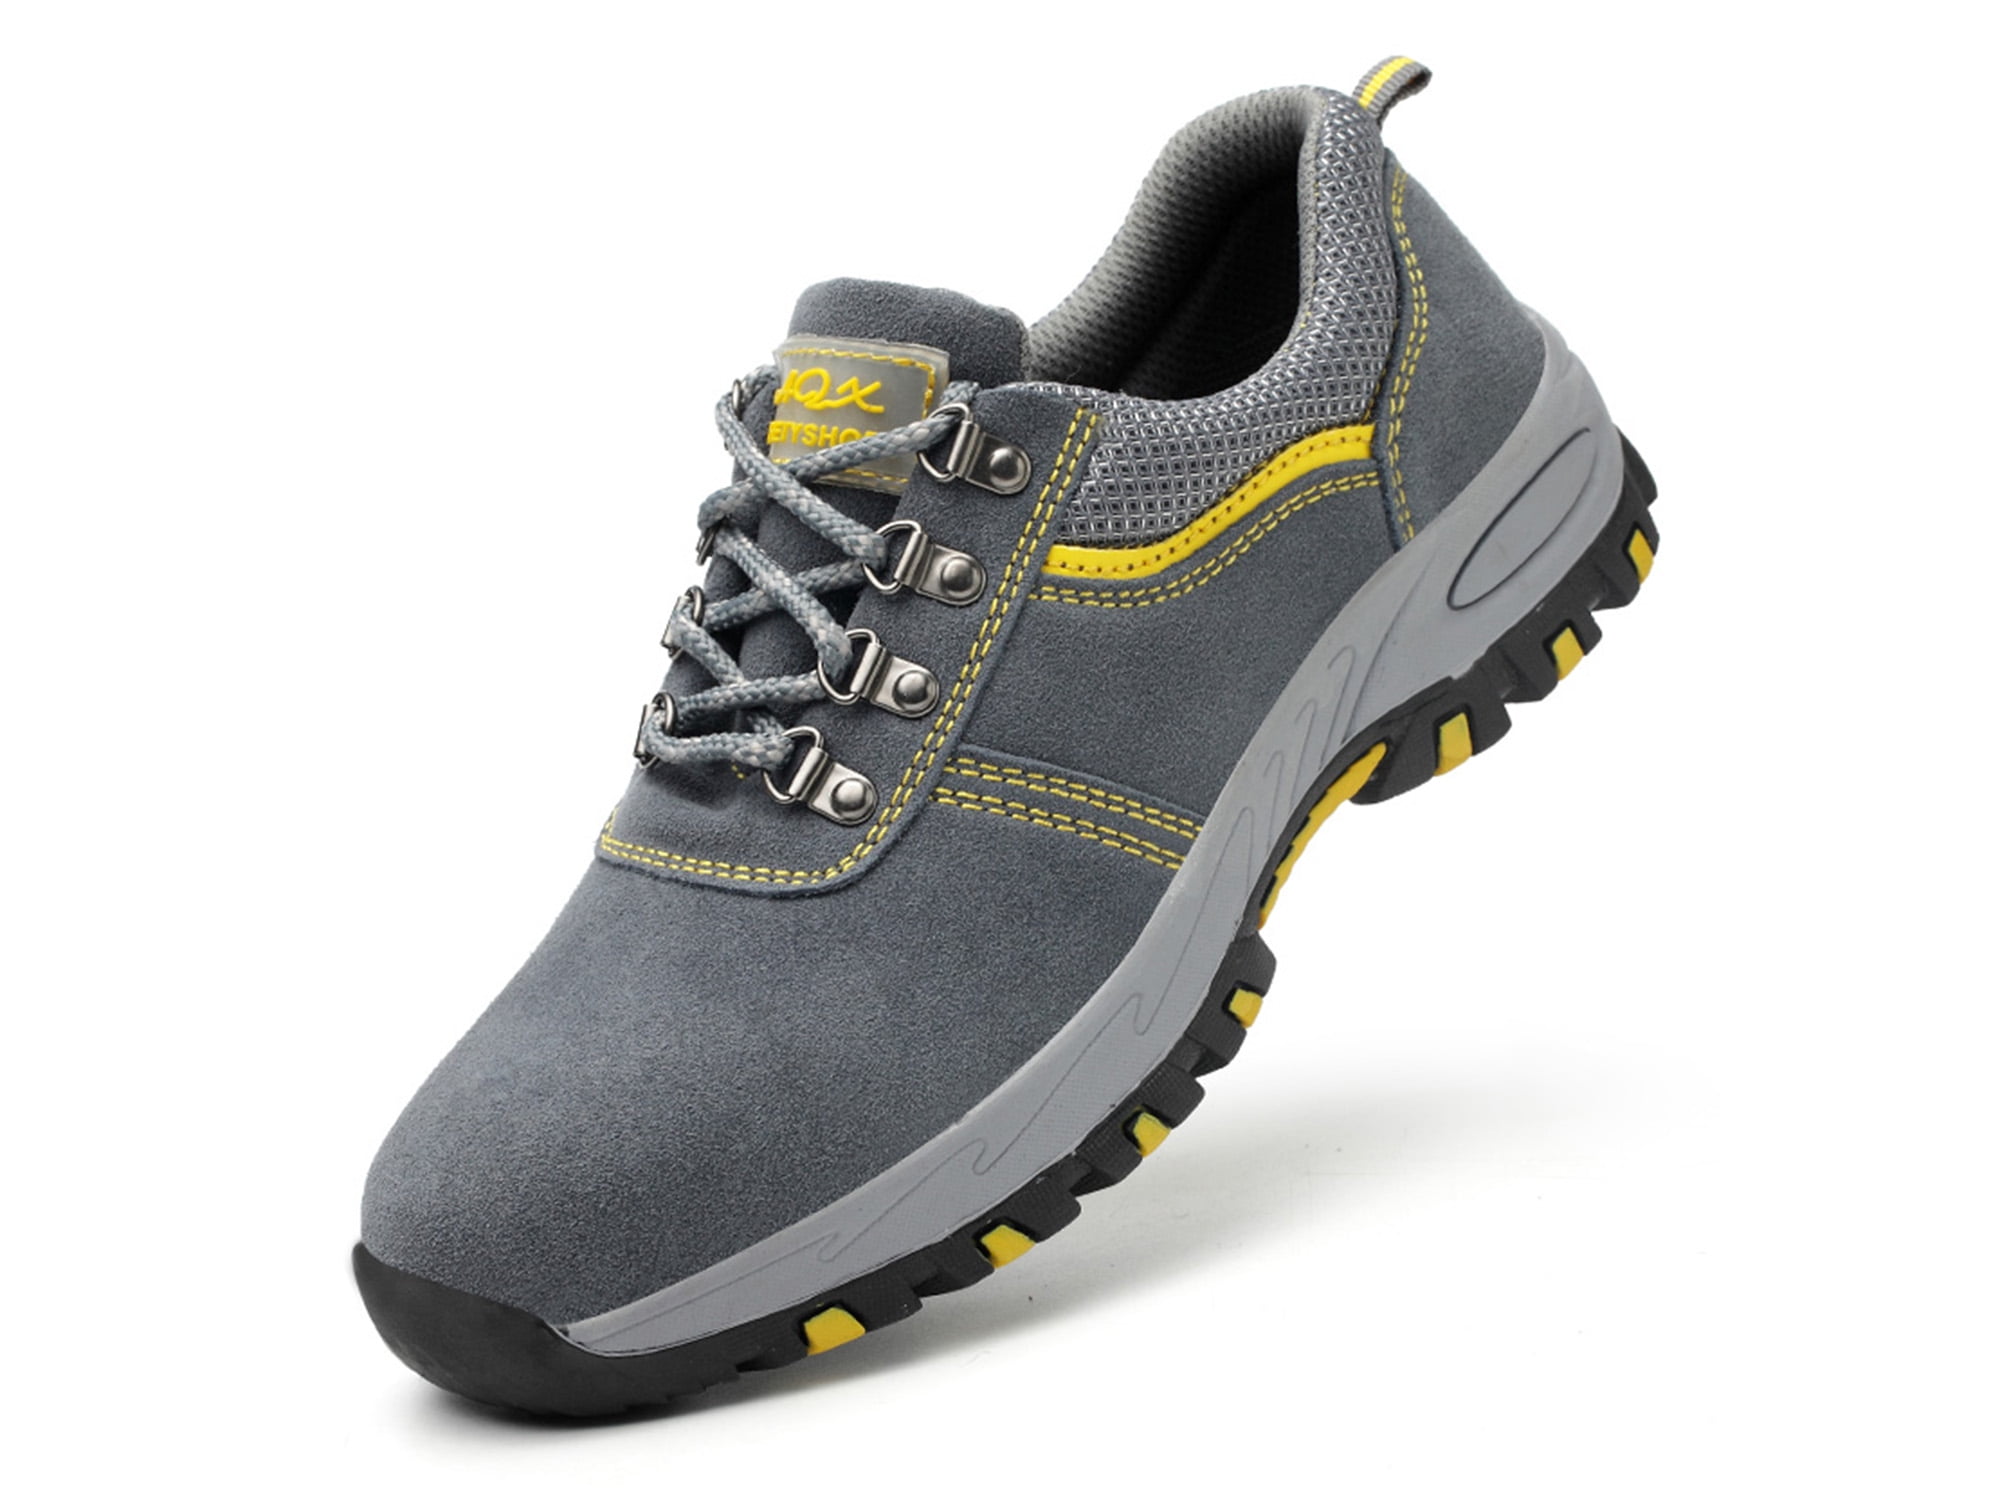 OwnShoe Steel Toe Shoes for Men Women Waterproof Safety Sneakers Work ...